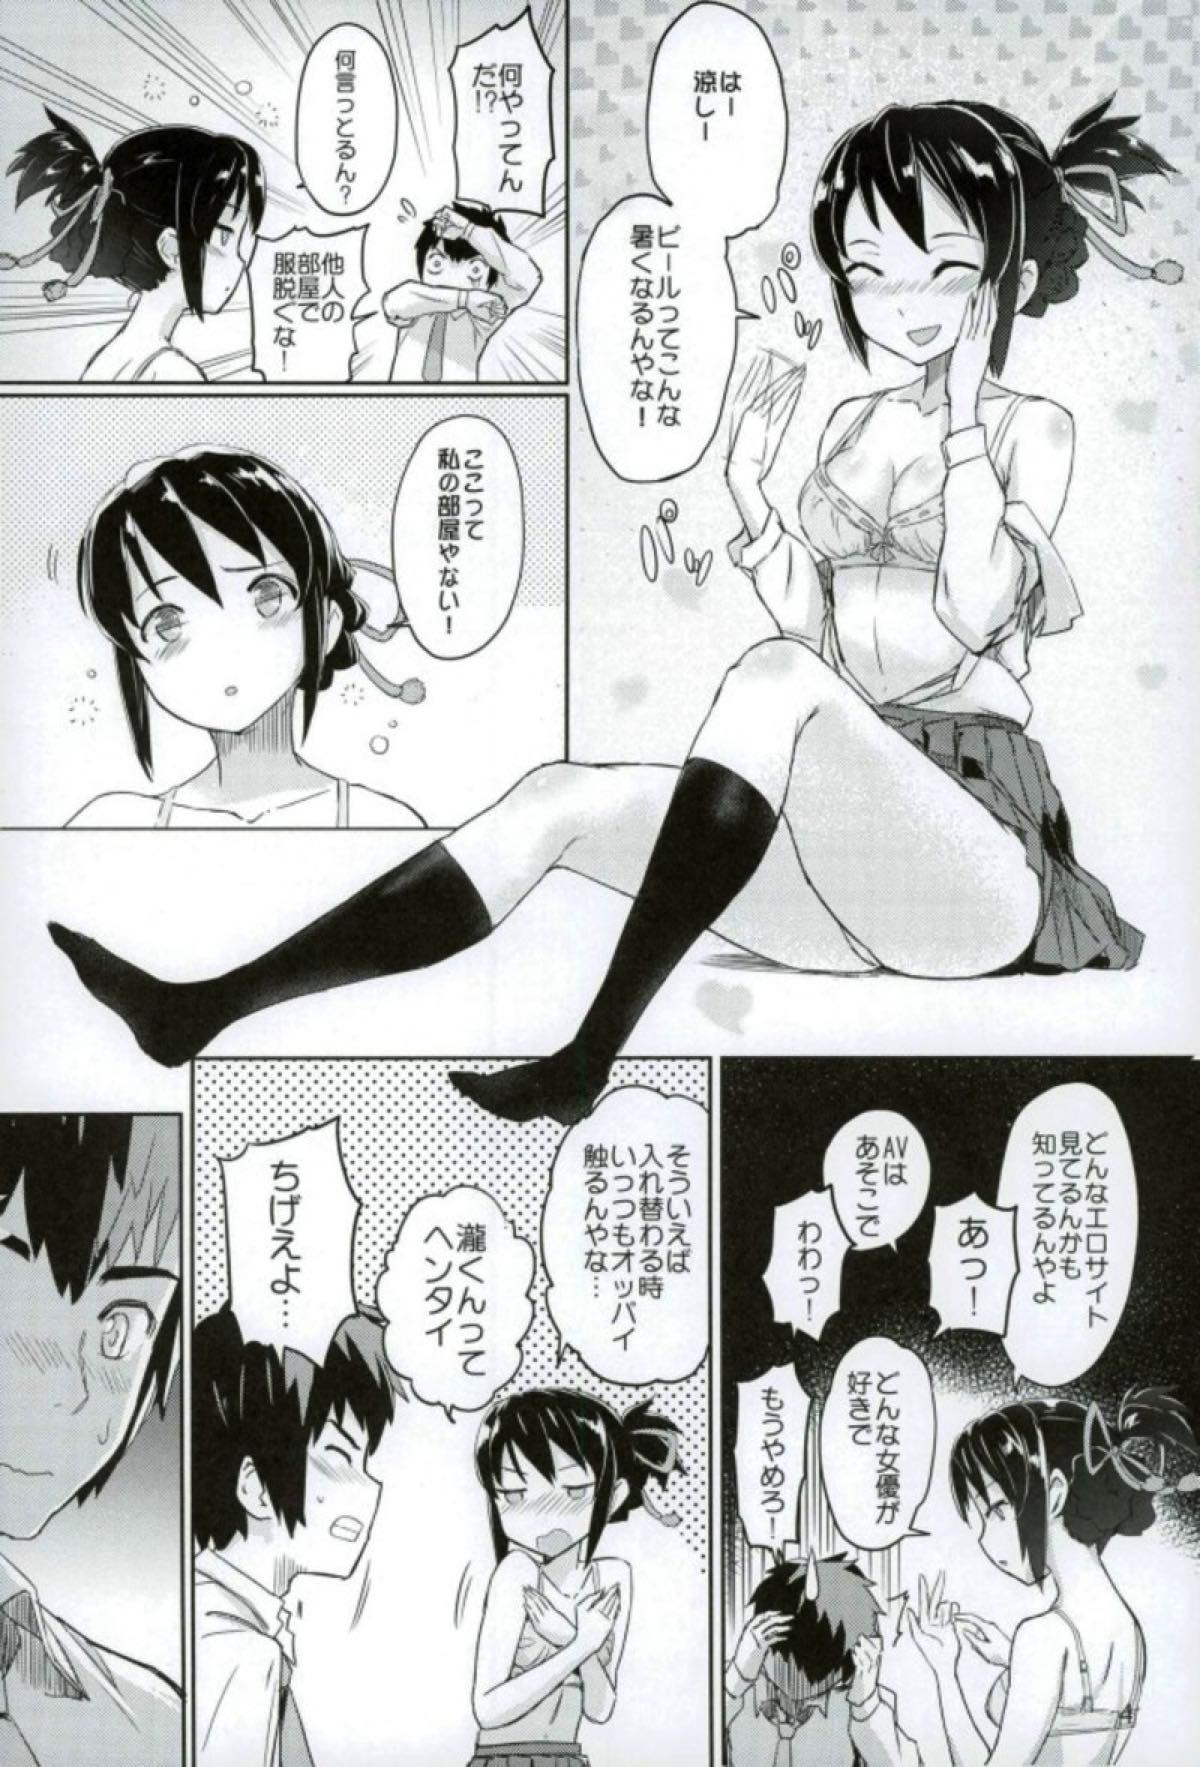 Cavala Kimi to Boku no Musubi - Kimi no na wa. Hot Women Having Sex - Page 5